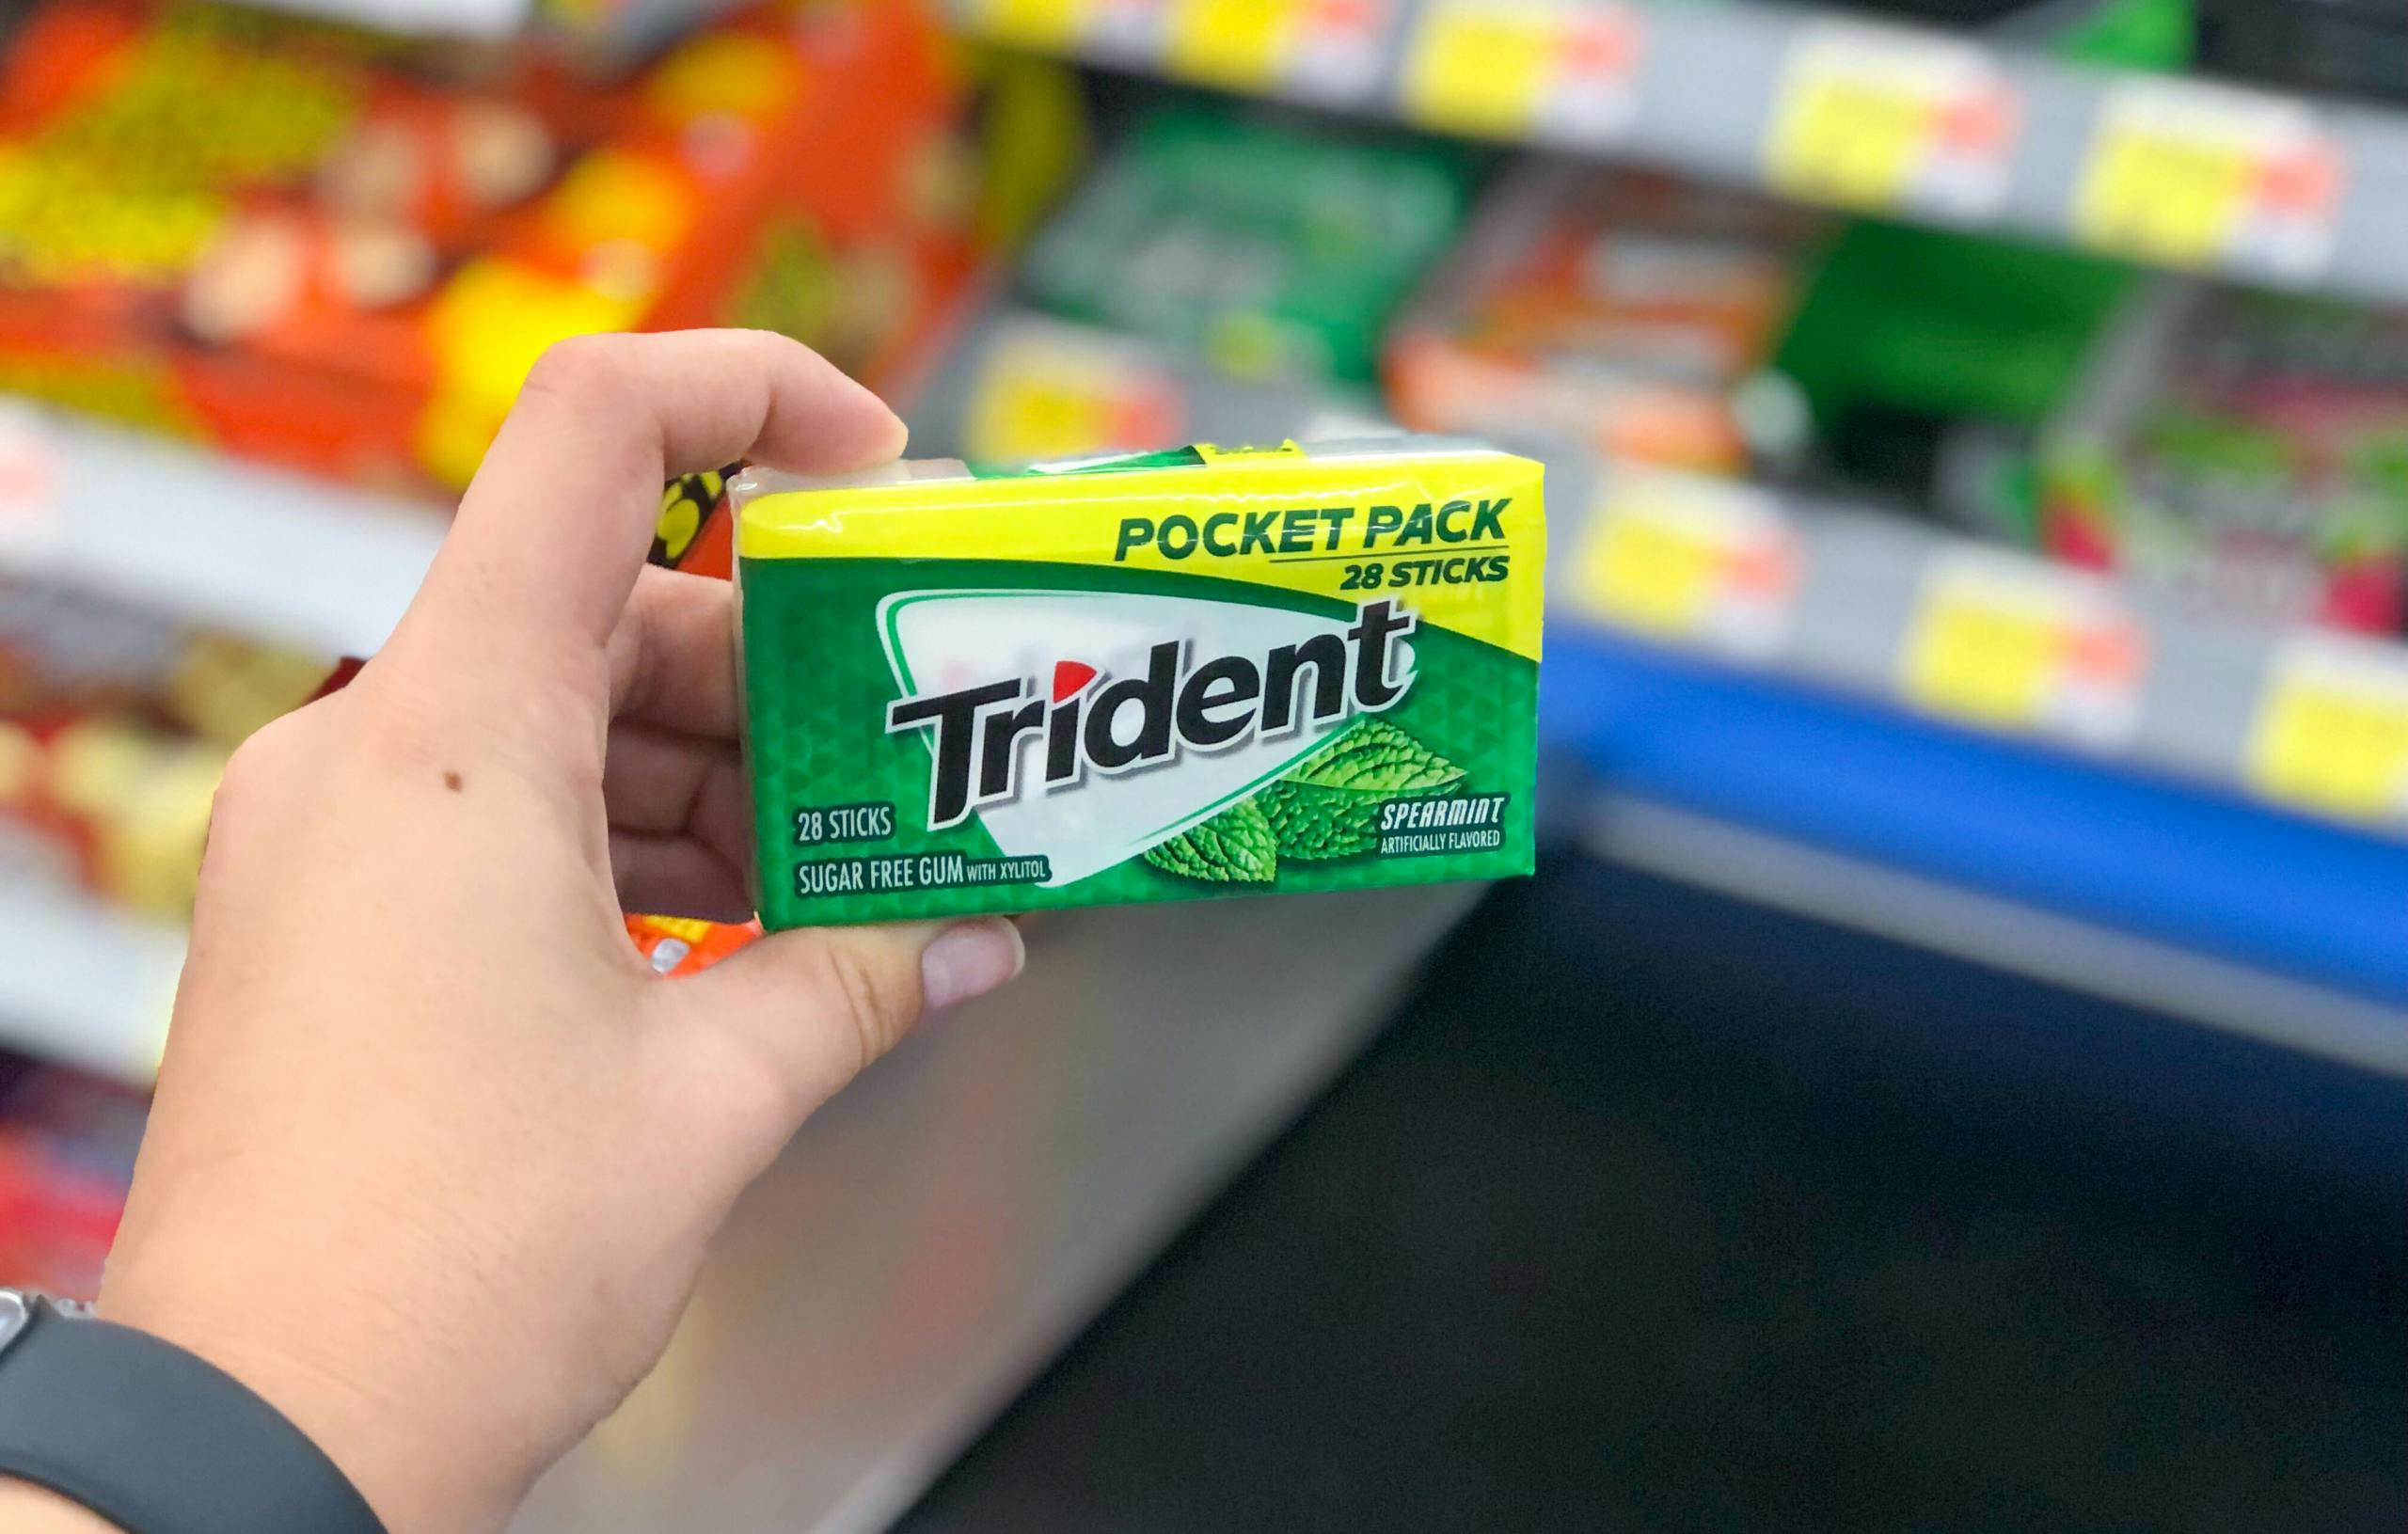 walmart-trident-gum-pocket-pack-2021